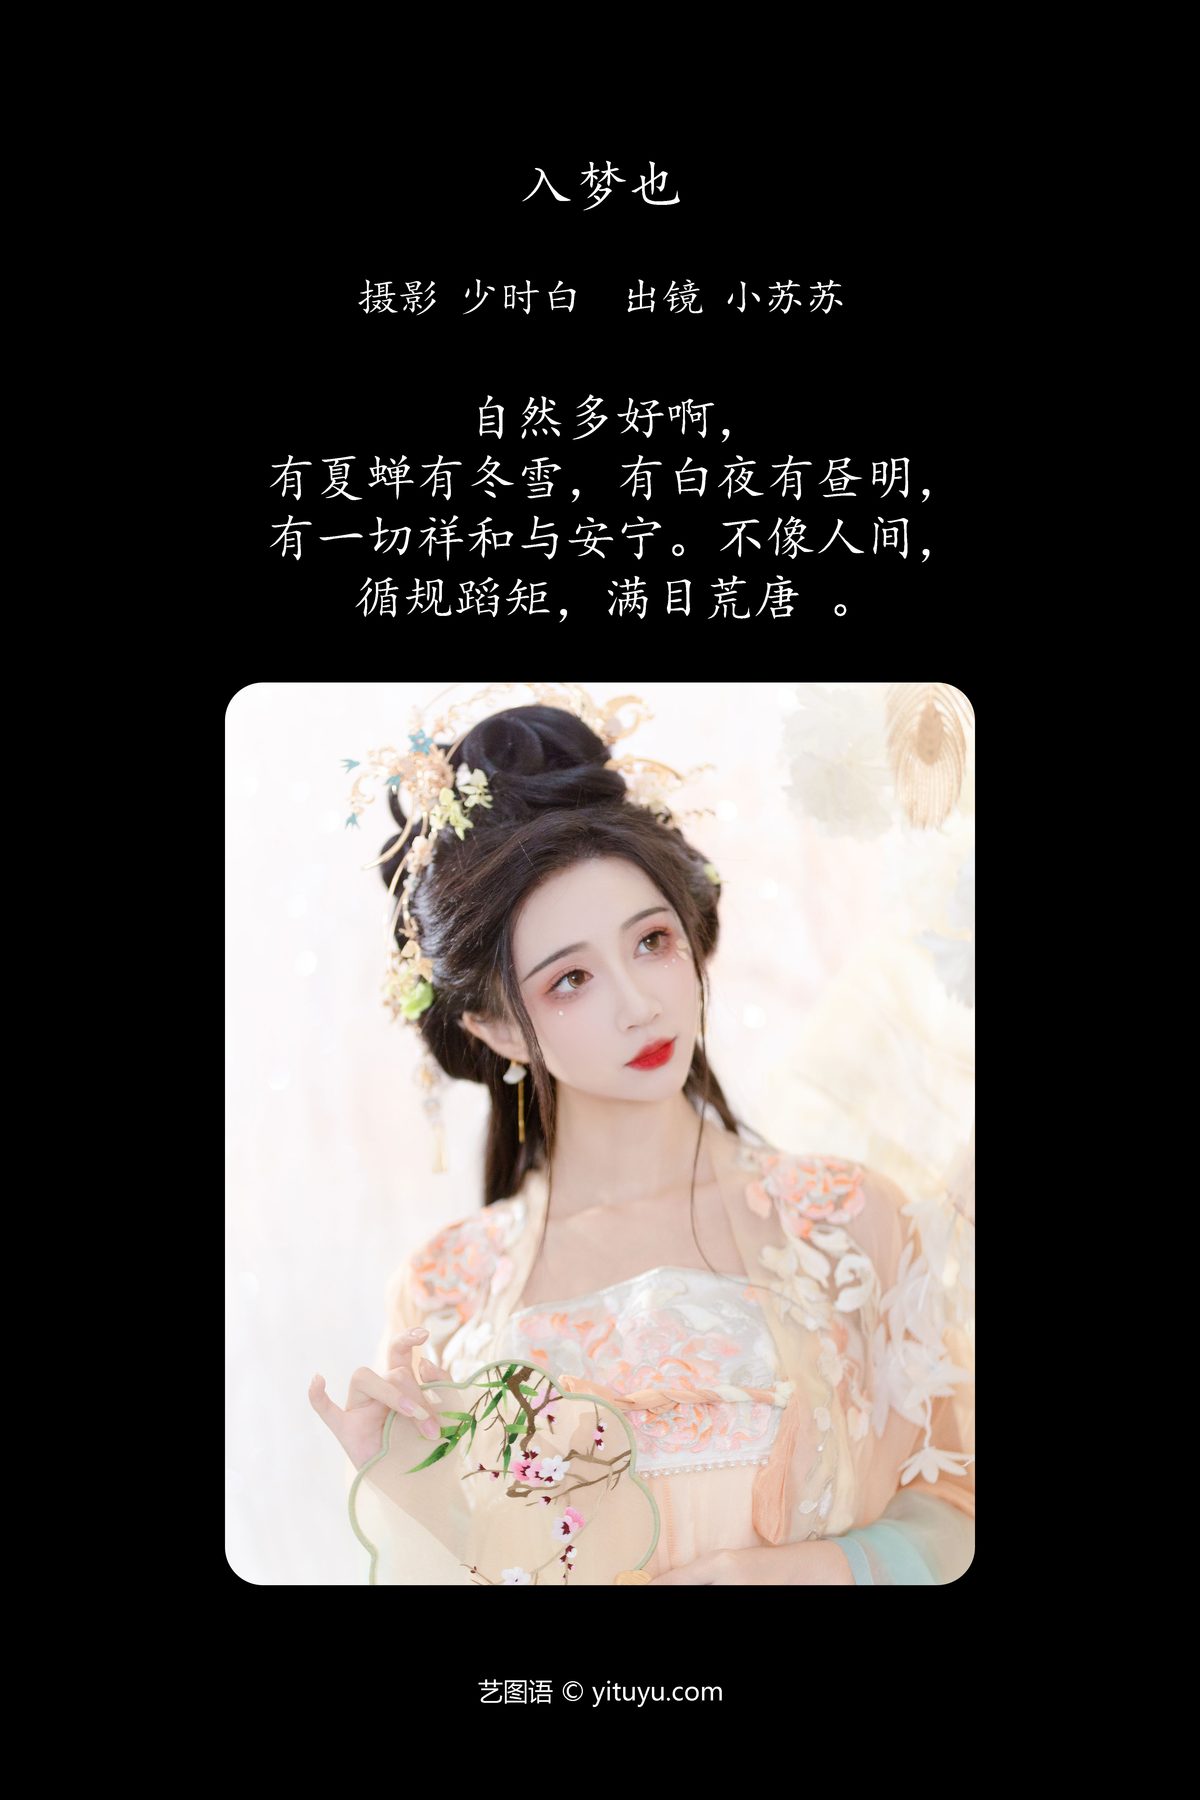 YiTuYu艺图语 Vol 5606 Qi Luo Sheng De Xiao Su Su 0002 4714101541.jpg